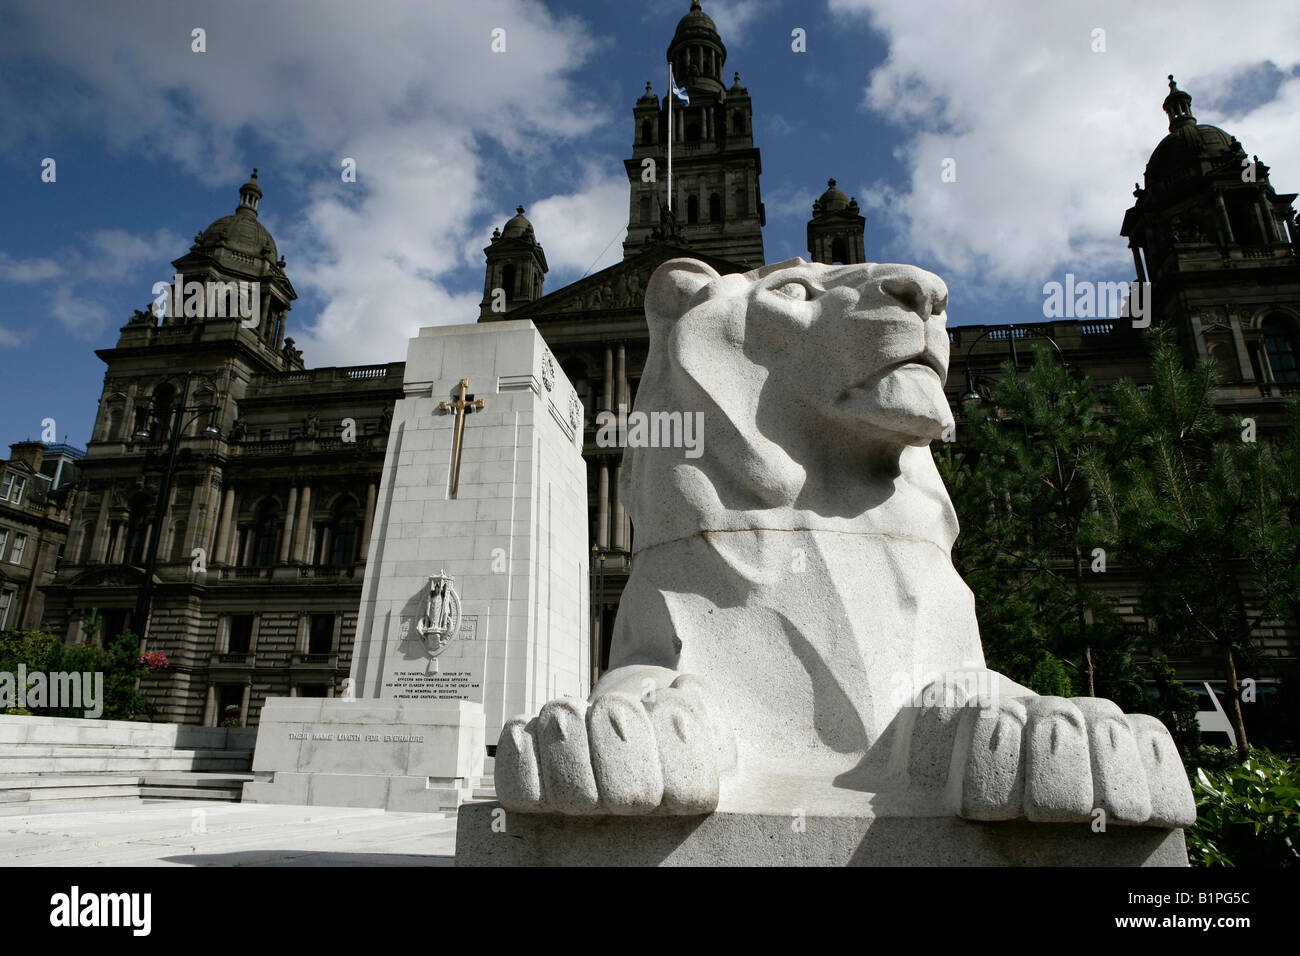 Stadt in Glasgow, Schottland. Löwendenkmal am Cenotaph in George Square mit der City Chambers im Hintergrund. Stockfoto